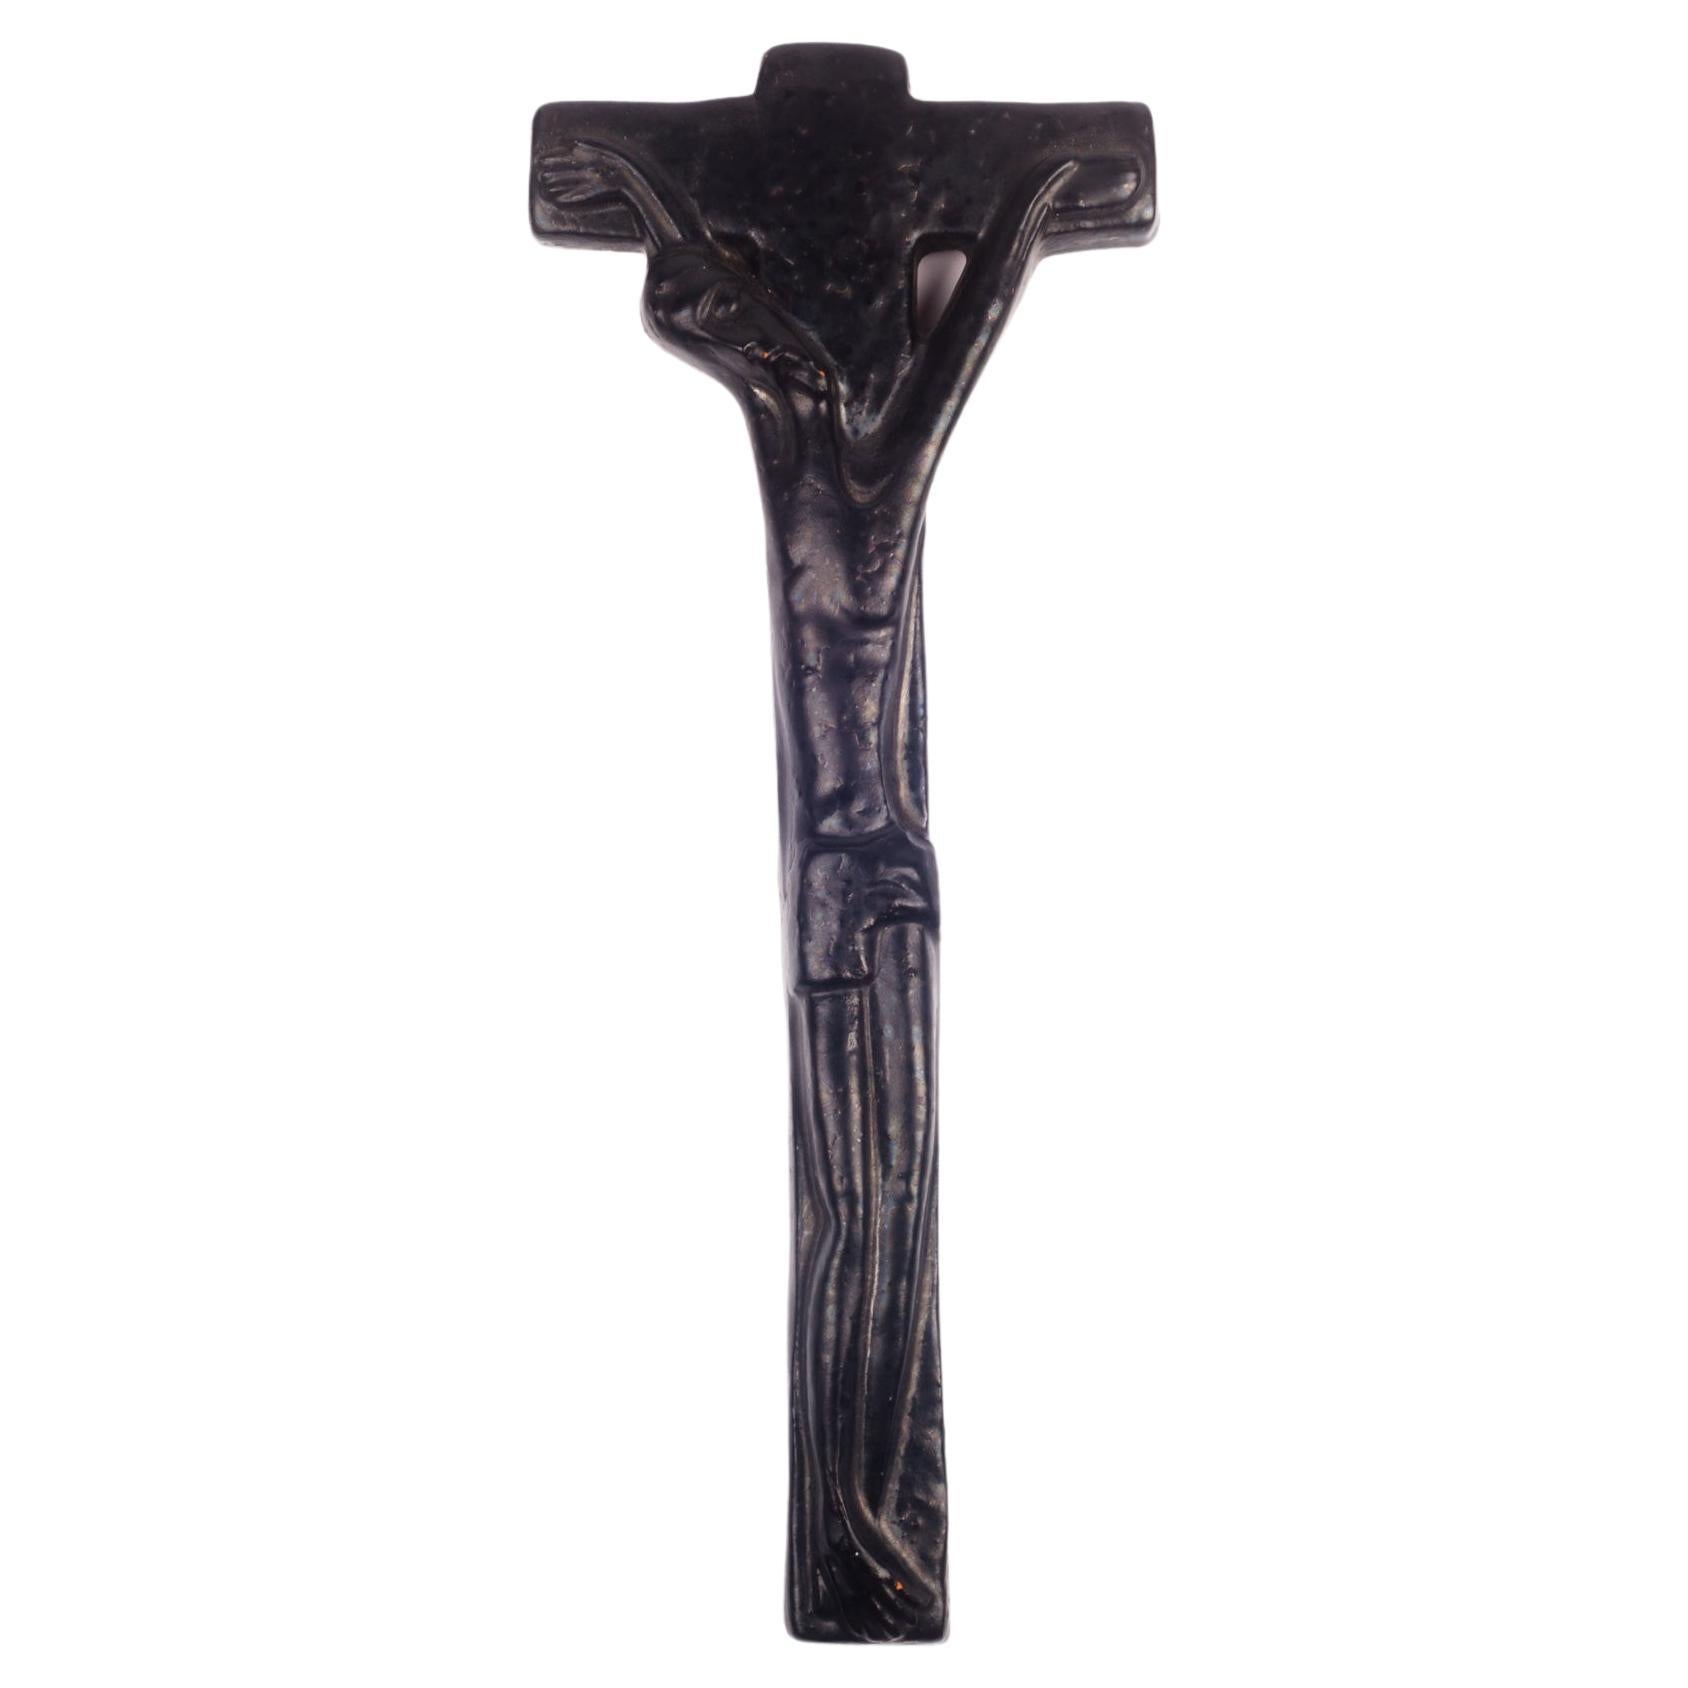 European Crucifix in Glazed Ceramic, Black, 1970s